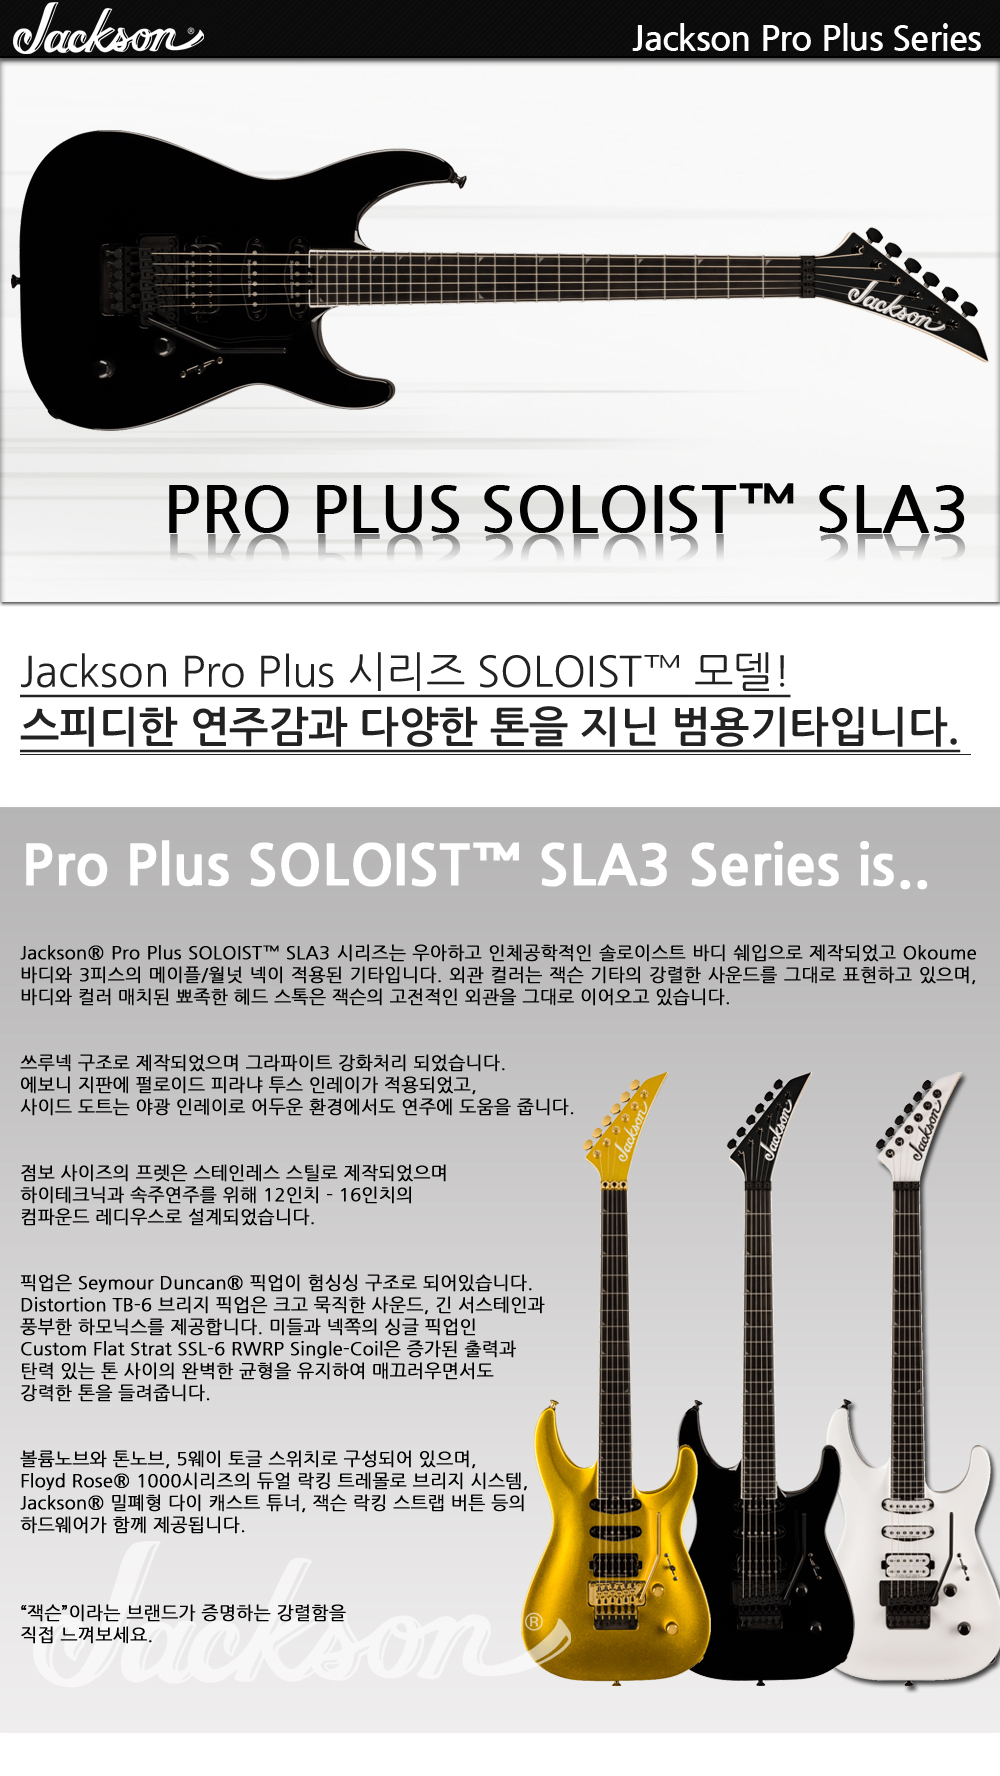 Jackson-ProPlus-Soloist-SLA3-DeepBlack_1_134910.jpg